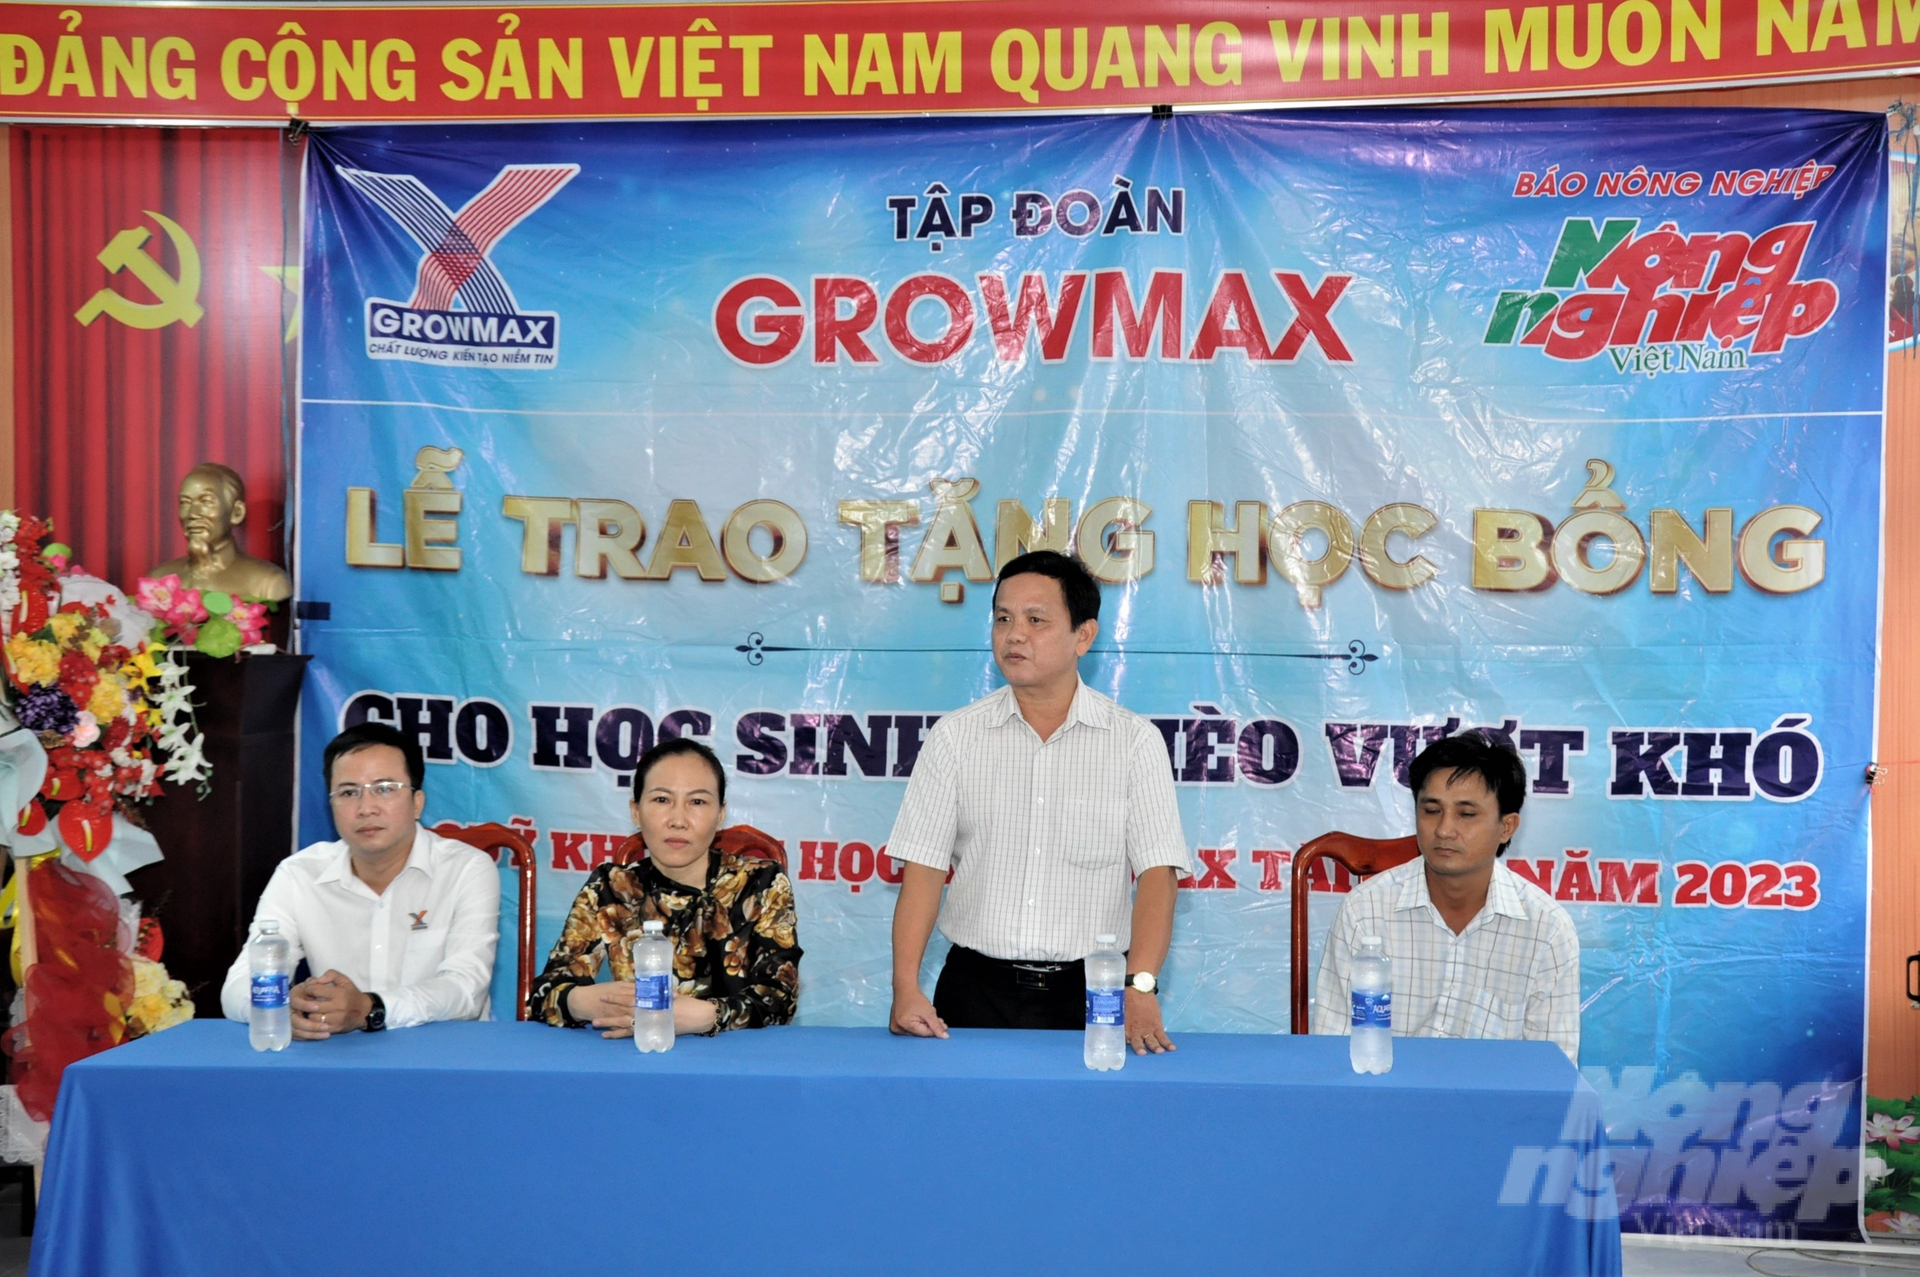 Thầy Mai Văn Hùng, Hiệu trưởng Trường Tiểu học và THCS Vĩnh Bình Bắc (đứng) cảm ơn Tập đoàn GrowMax và Báo Nông nghiệp Việt Nam đã quan tâm giúp đỡ, hỗ trợ học bổng GrowMax cho các em học sinh. Ảnh: Trung Chánh.